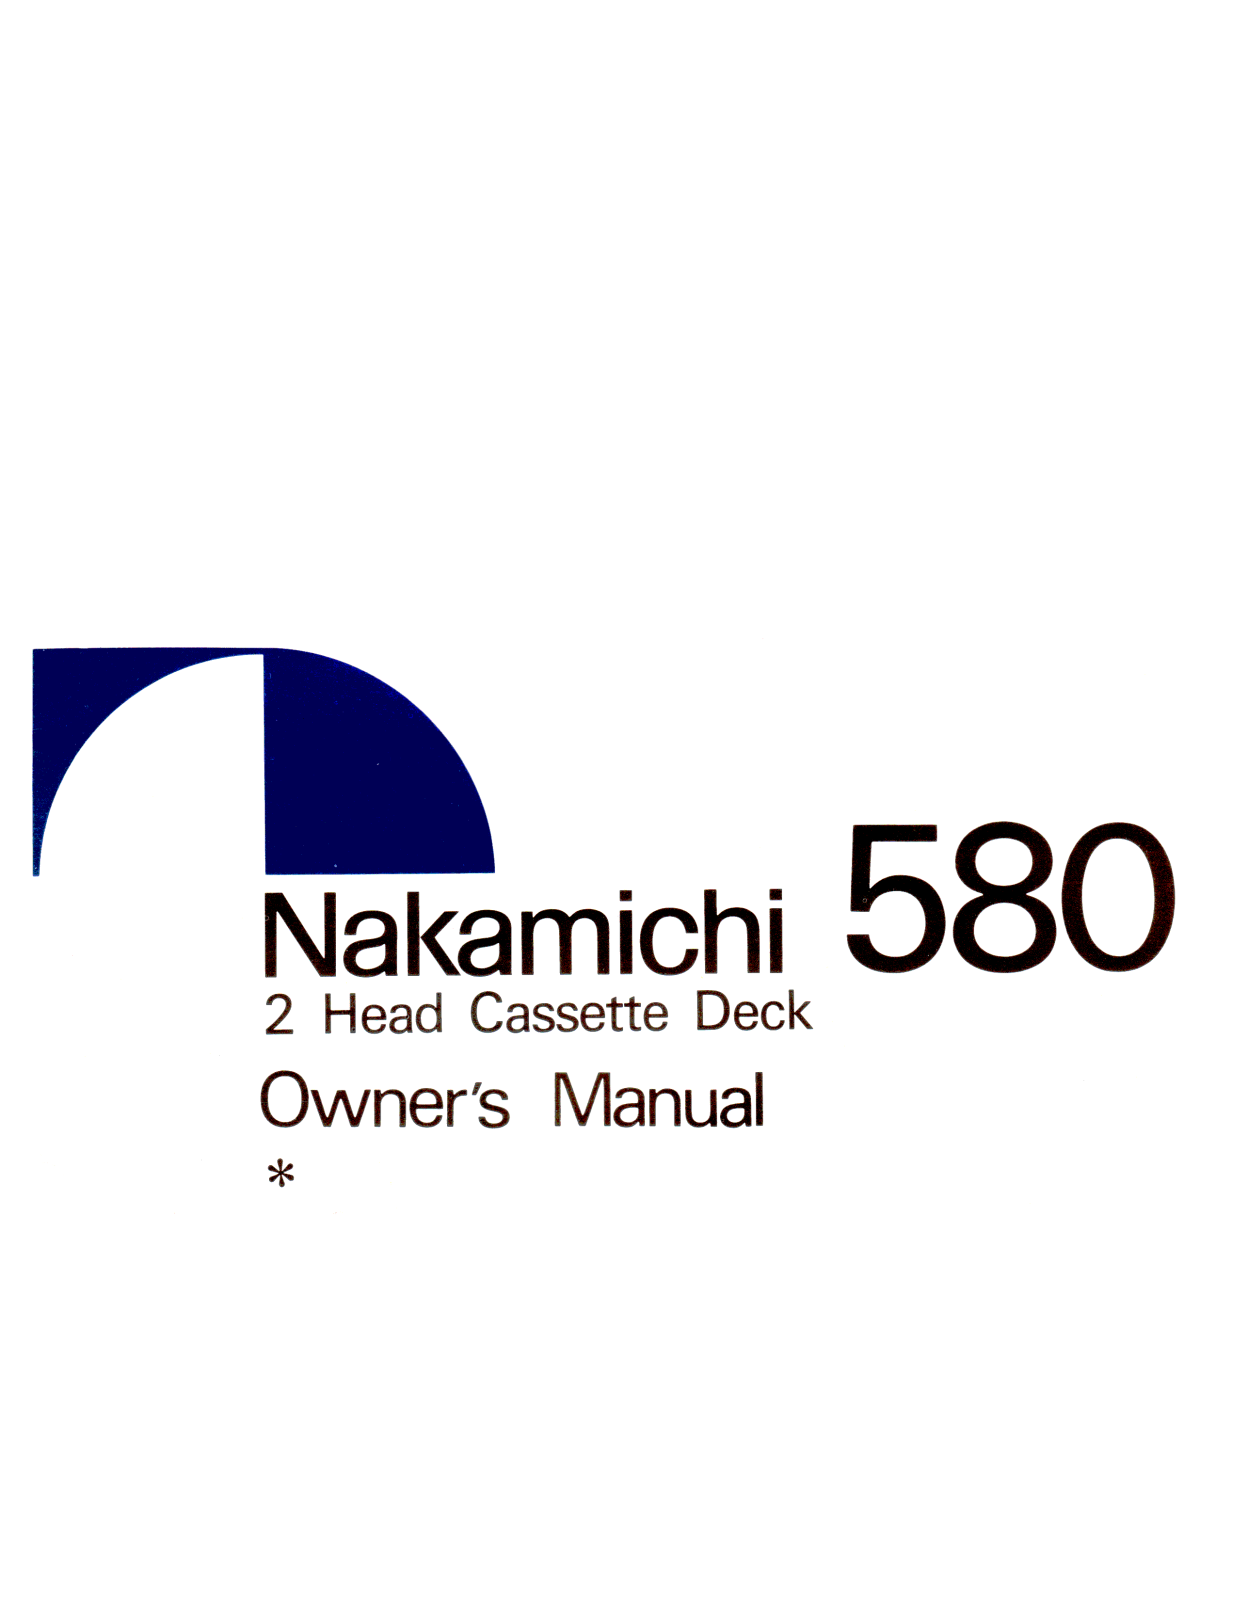 Nakamichi 580 Owners manual